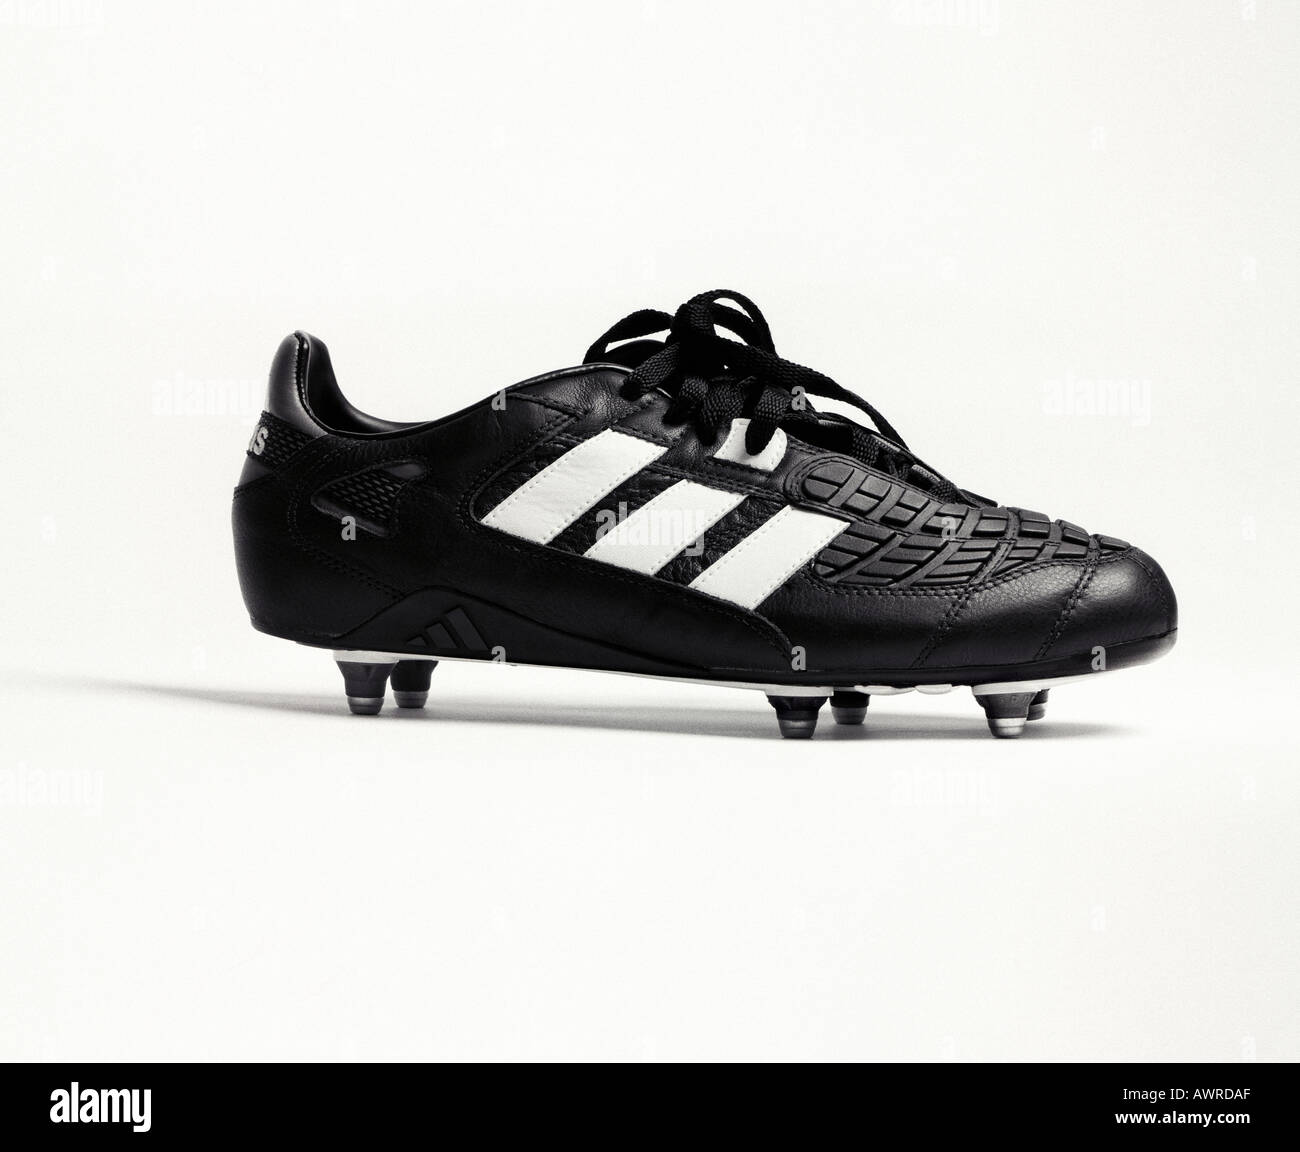 ein Adidas Predator Fußballschuh Stockfotografie - Alamy